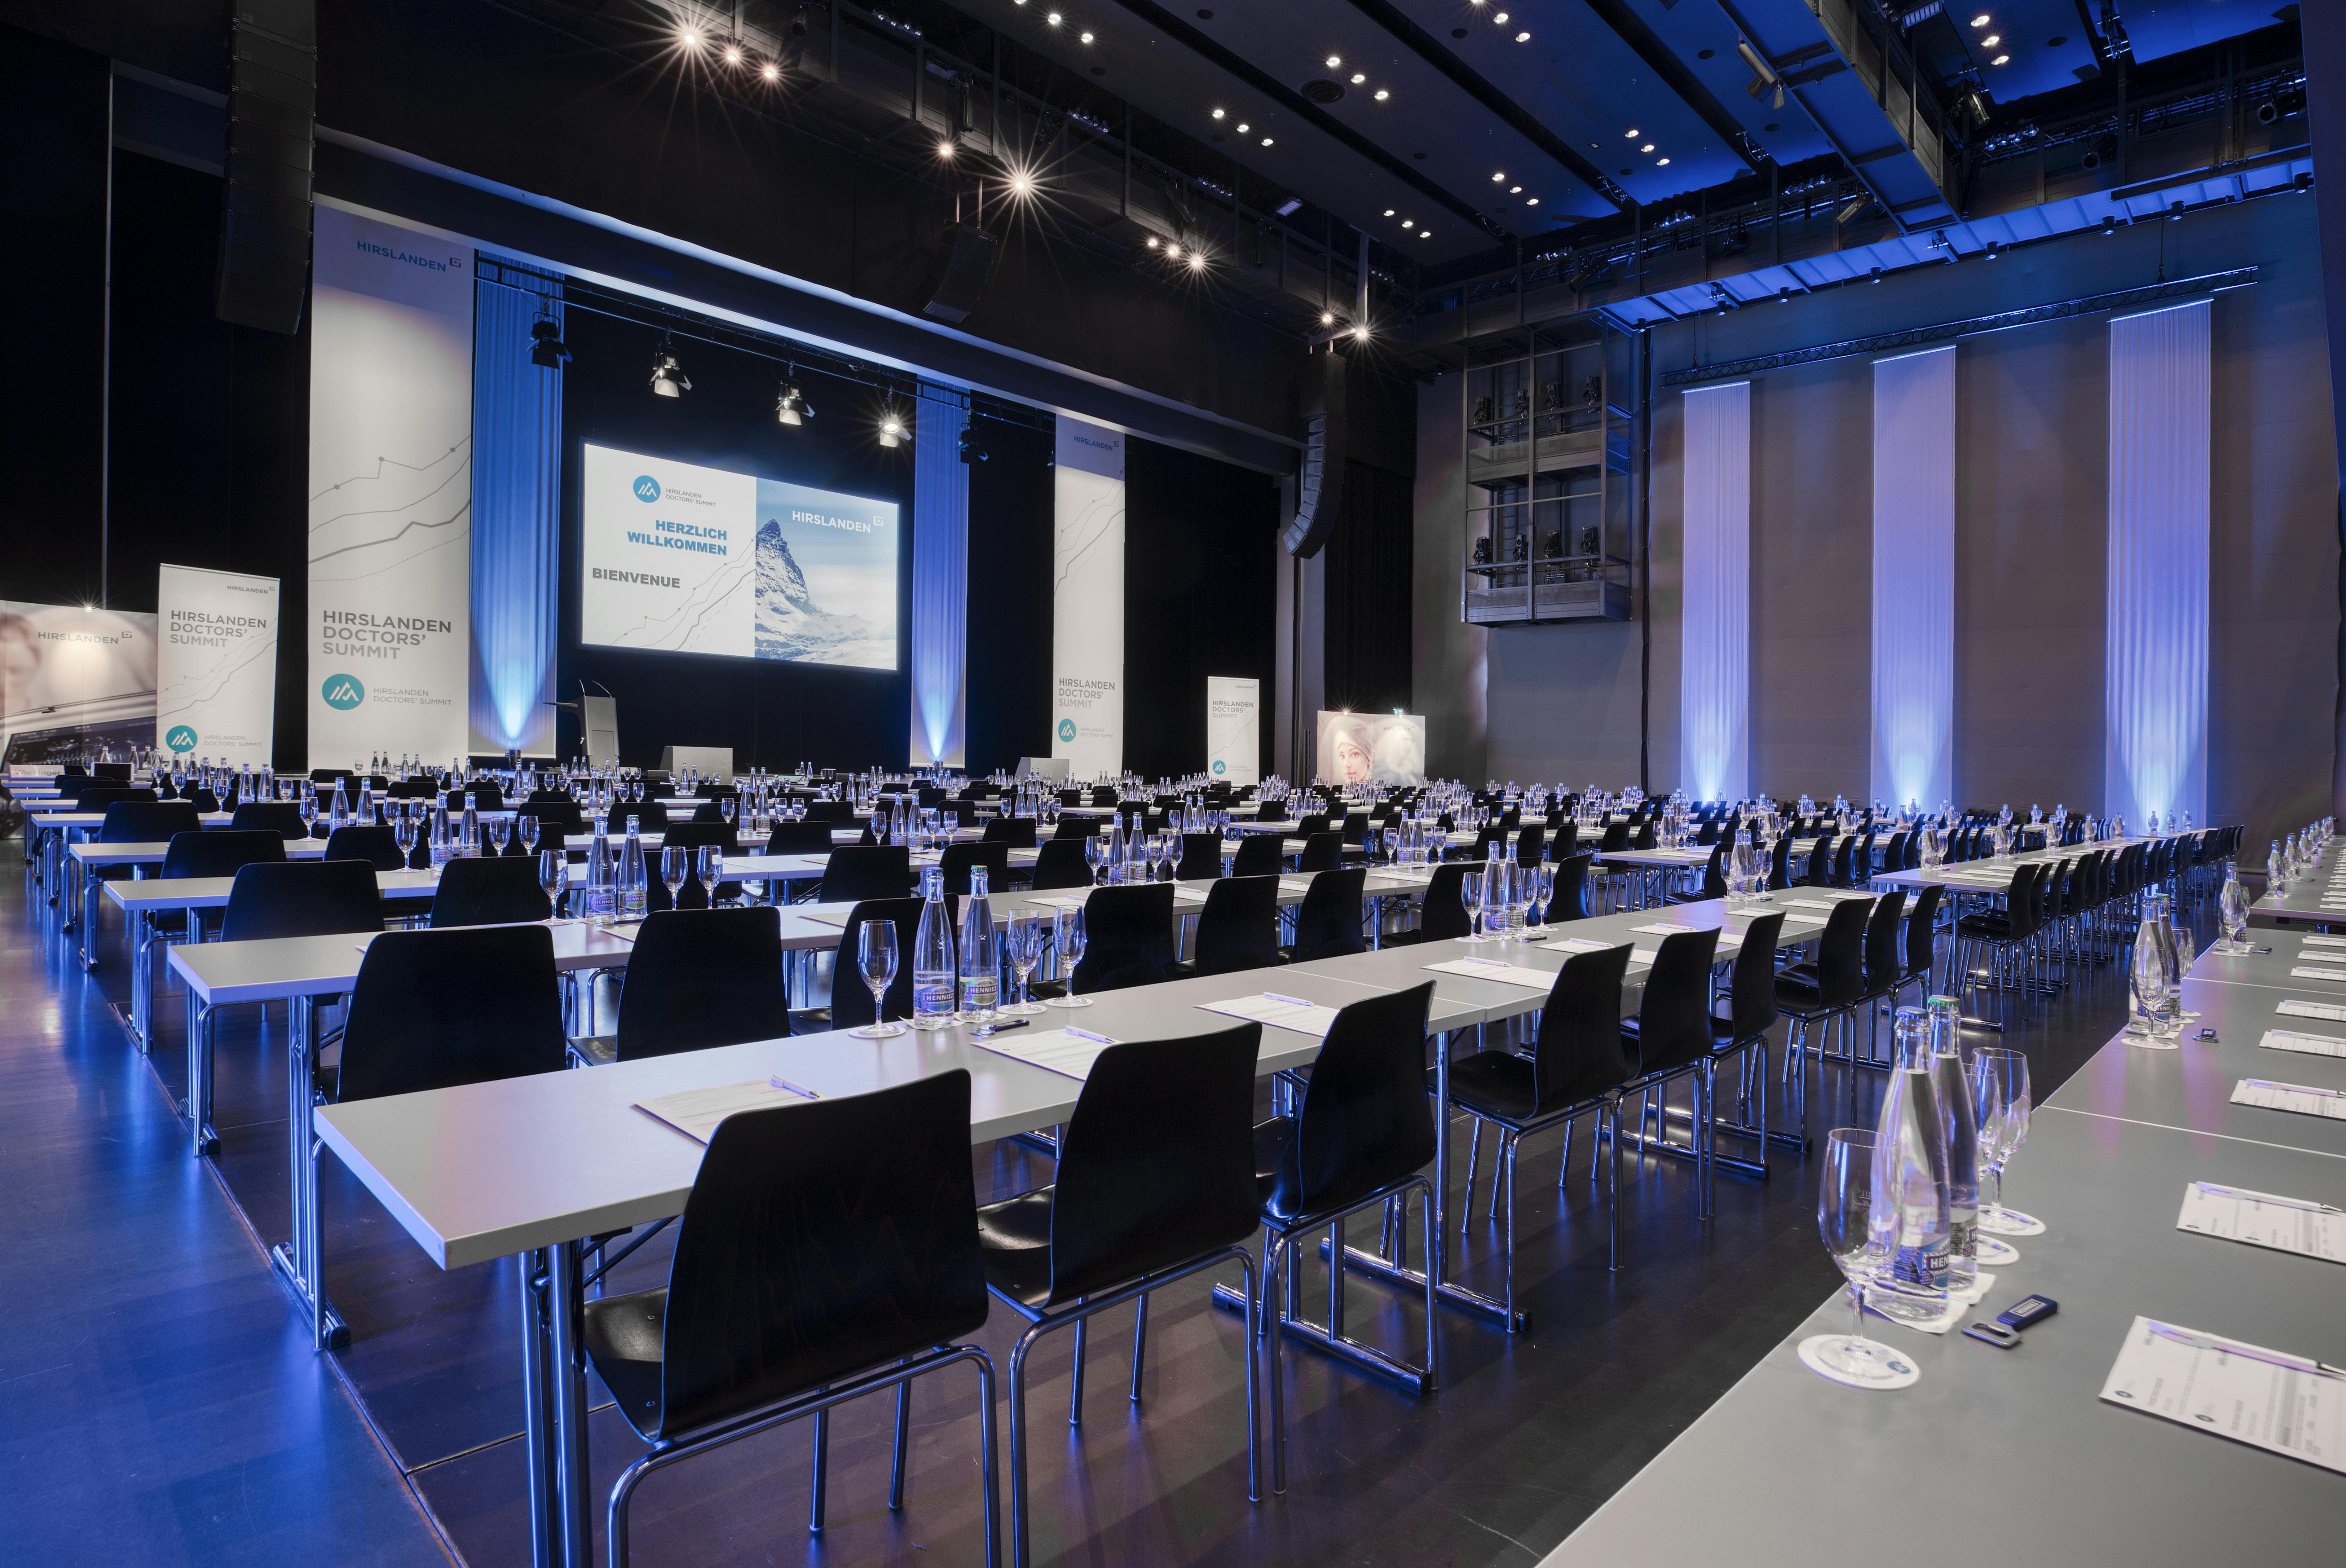 Hirslanden Kongress mit Seminarbestuhlung im Luzerner Saal